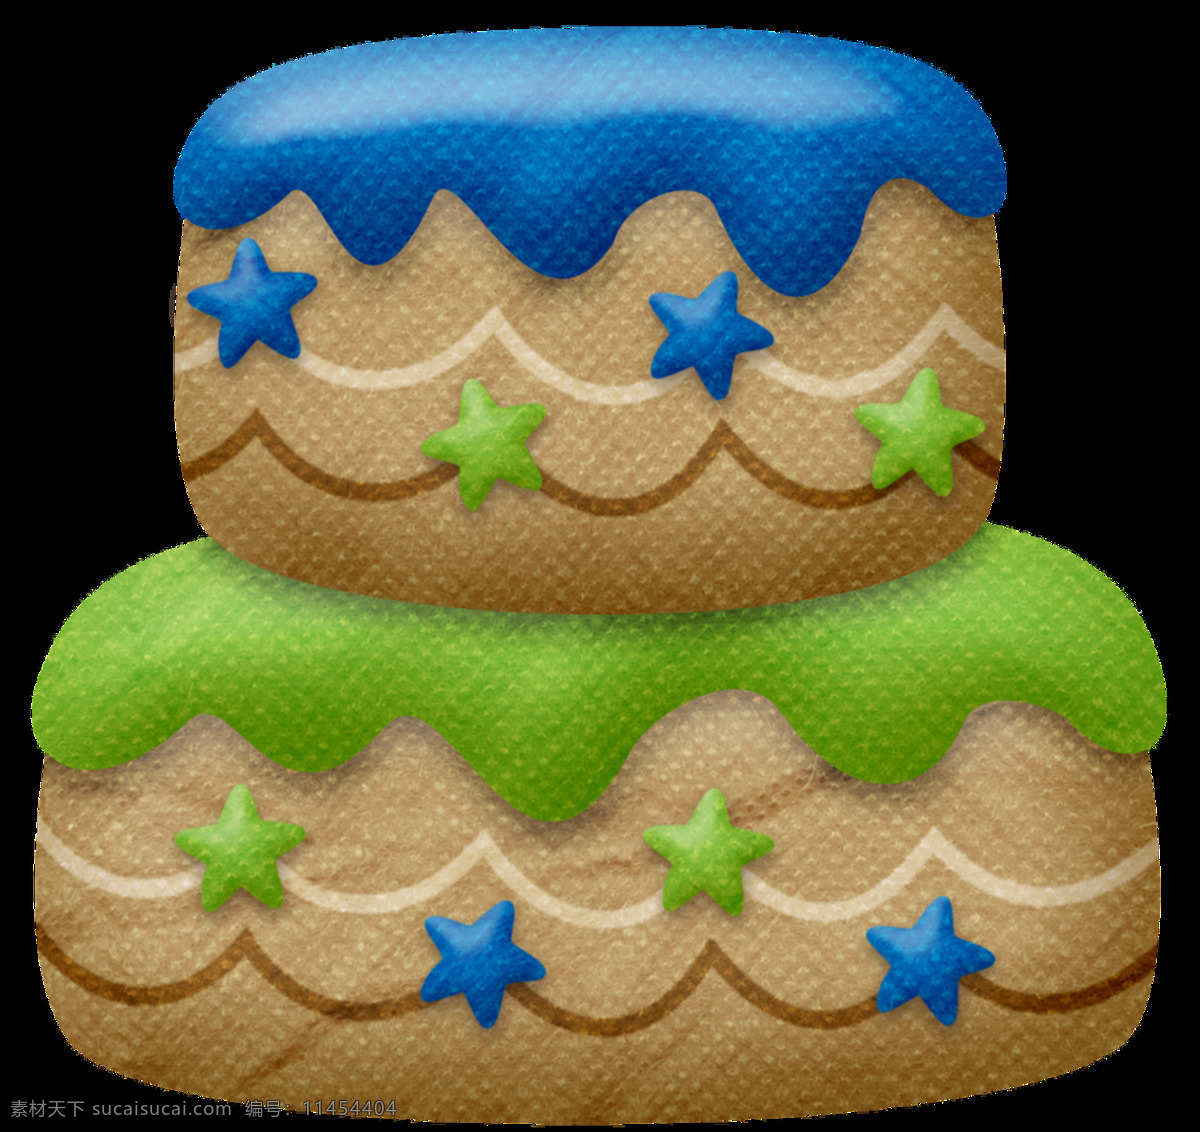 卡通 生日蛋糕 透明 png素材 创意 蛋糕 蓝色 绿色 免扣素材